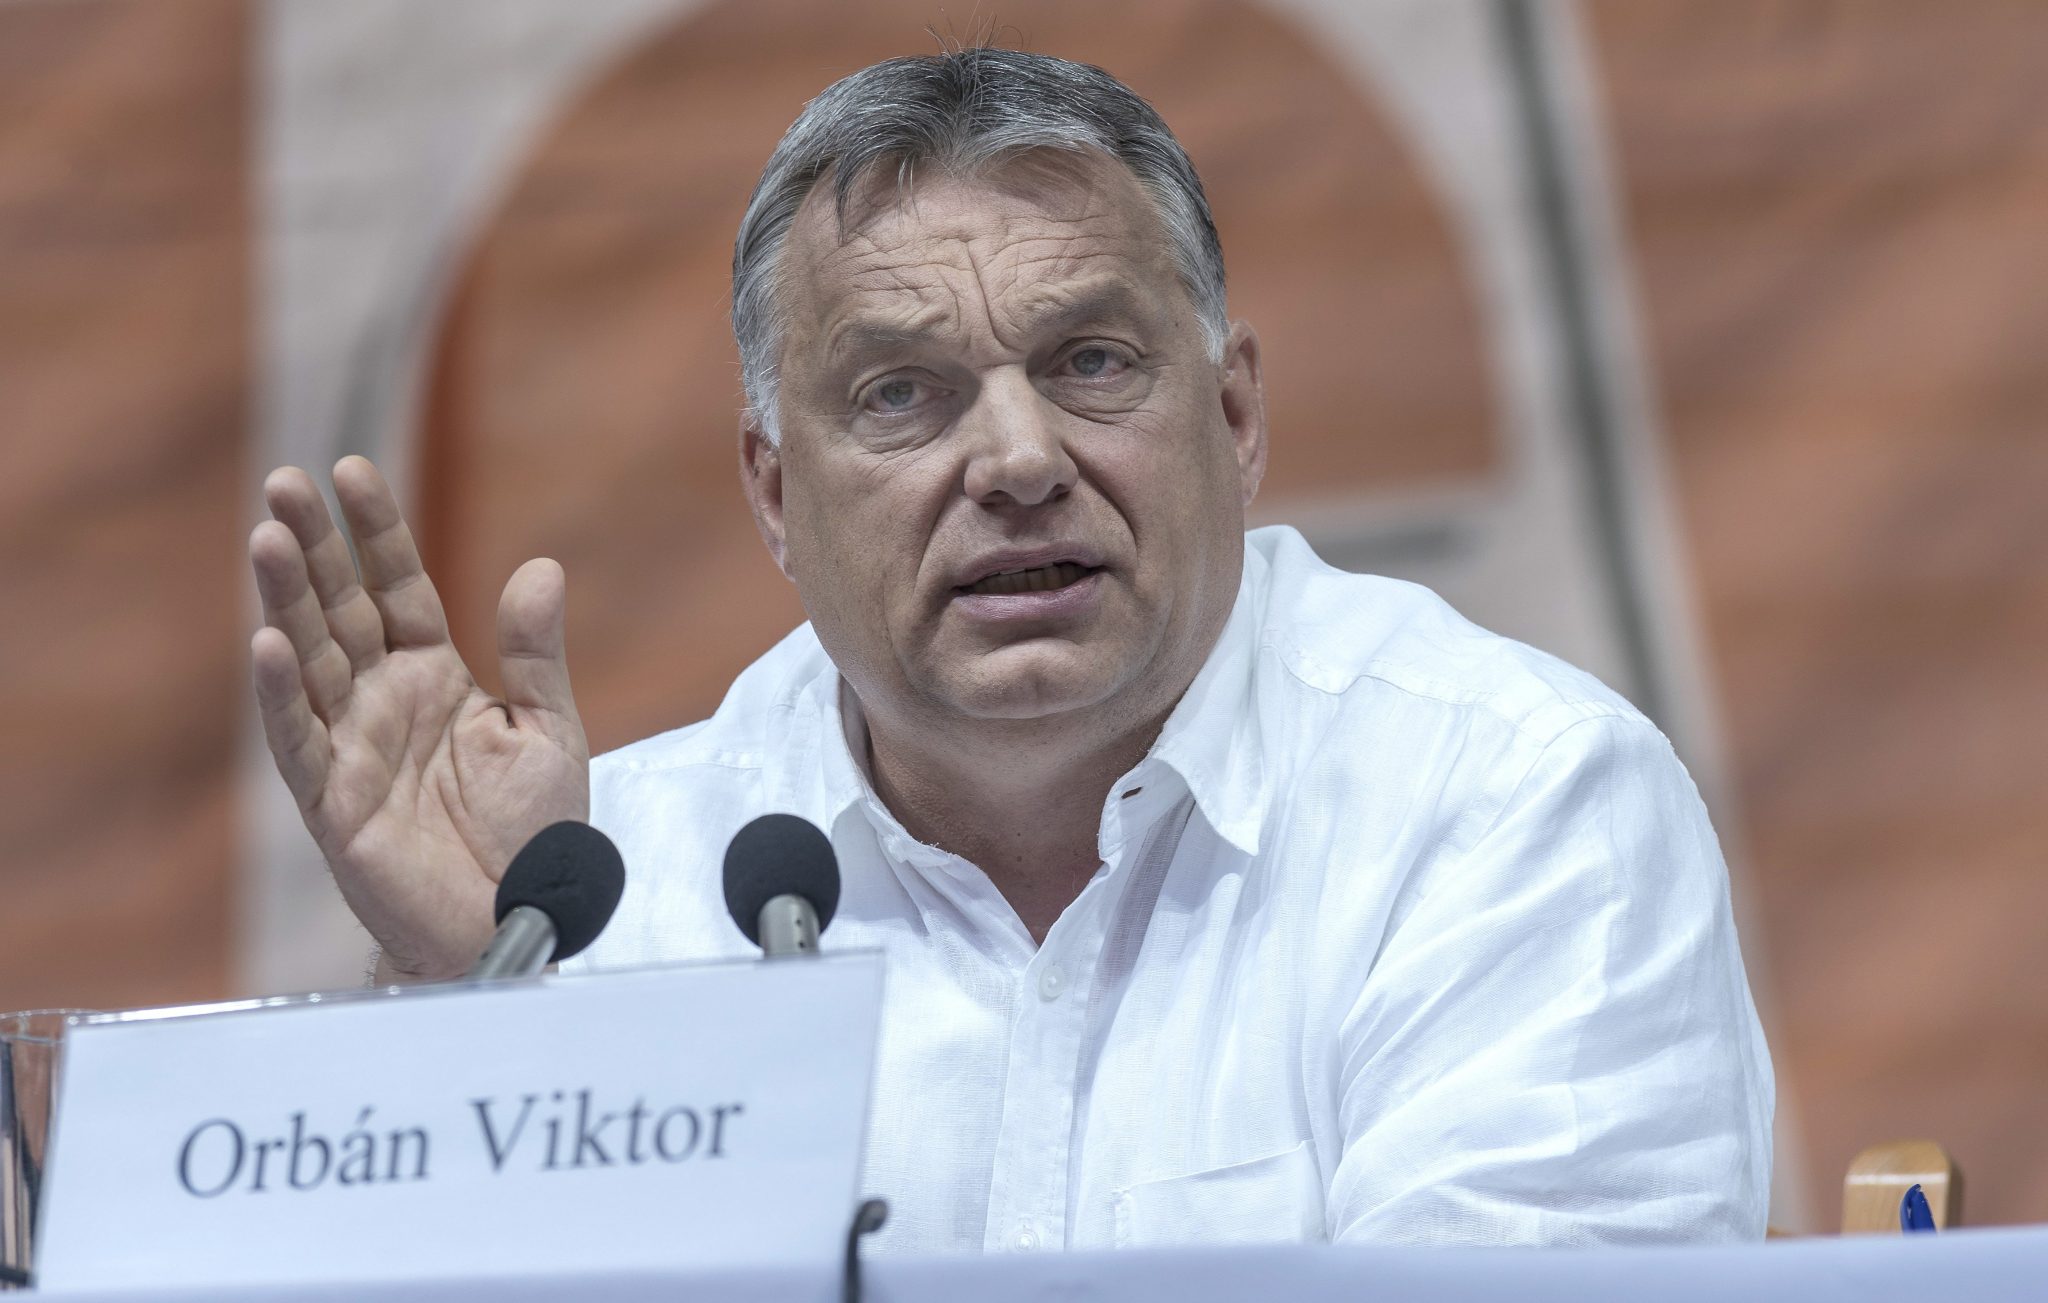 PM ORbán Румунія Tusványos